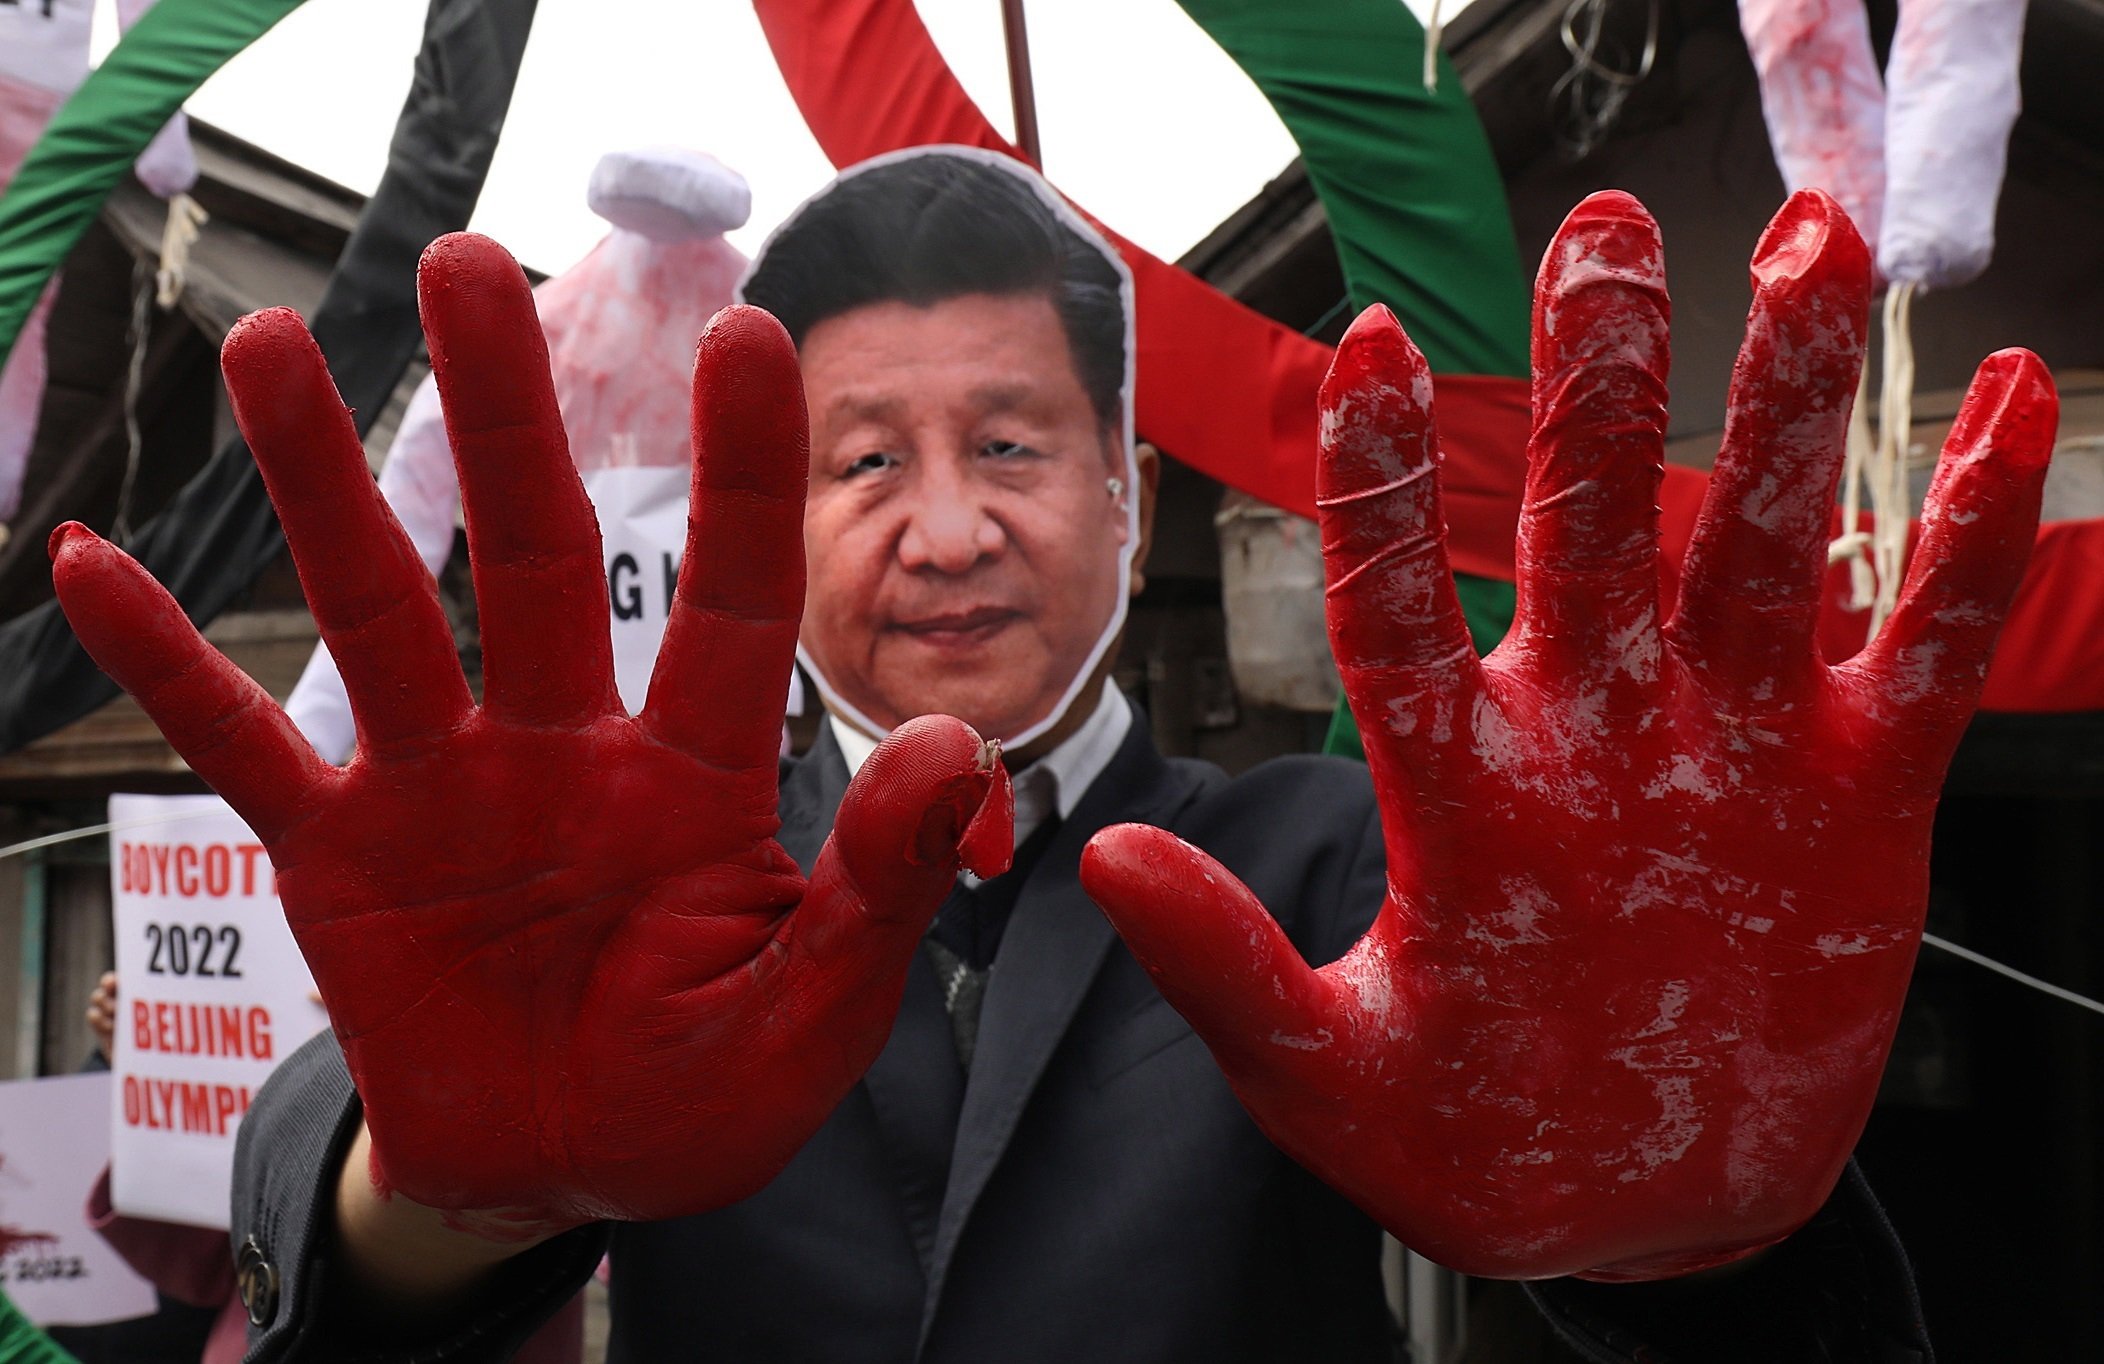 Los Estados Unidos condenan el "genocidio" de los uigures en China